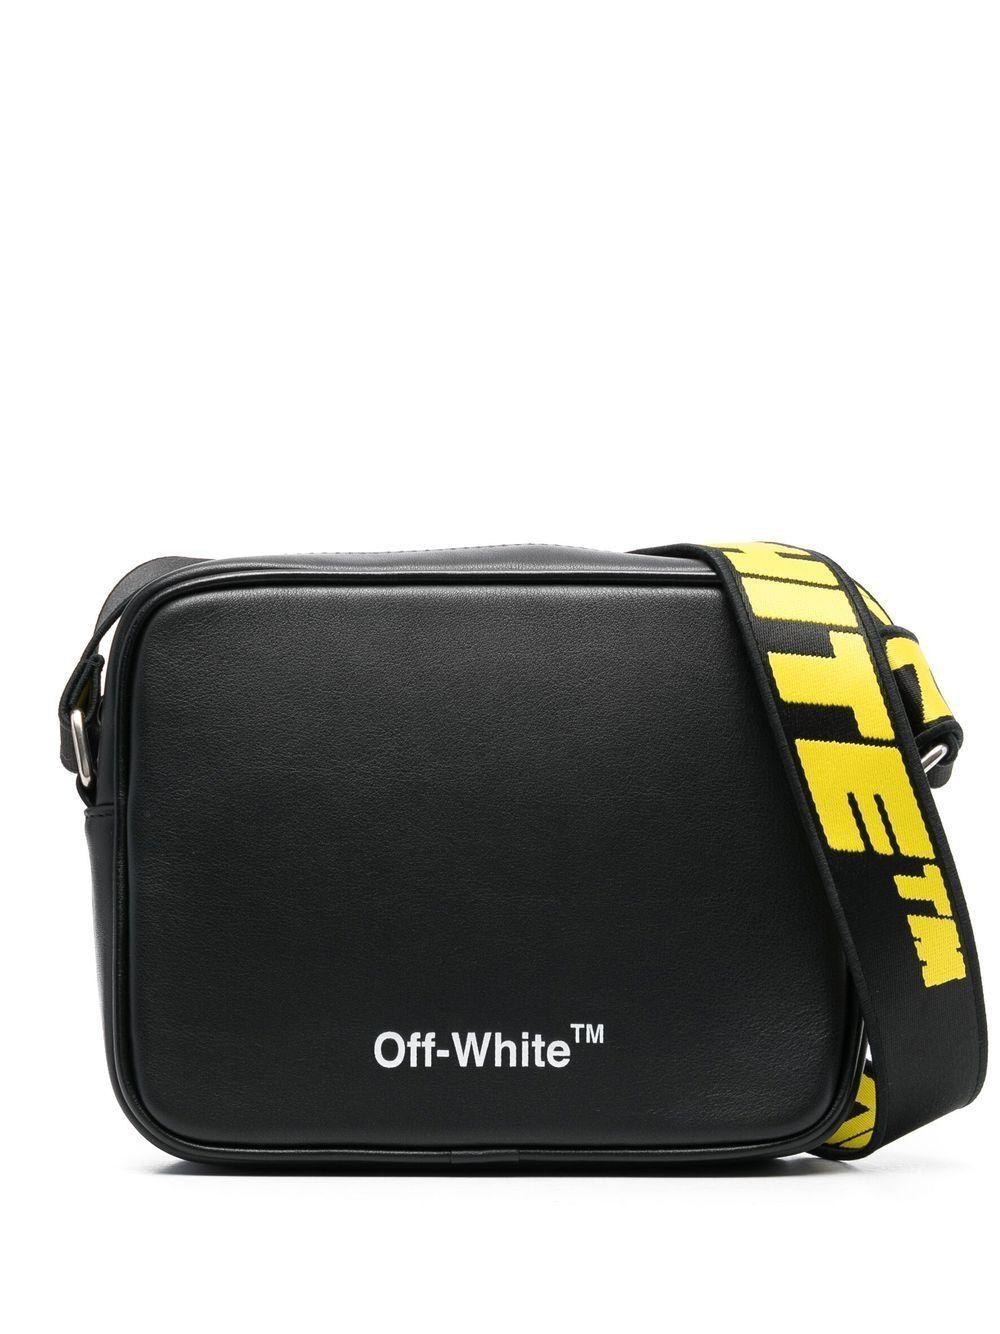 Off-White Virgil Abloh Leather Crossbody Bag Black for | Lyst